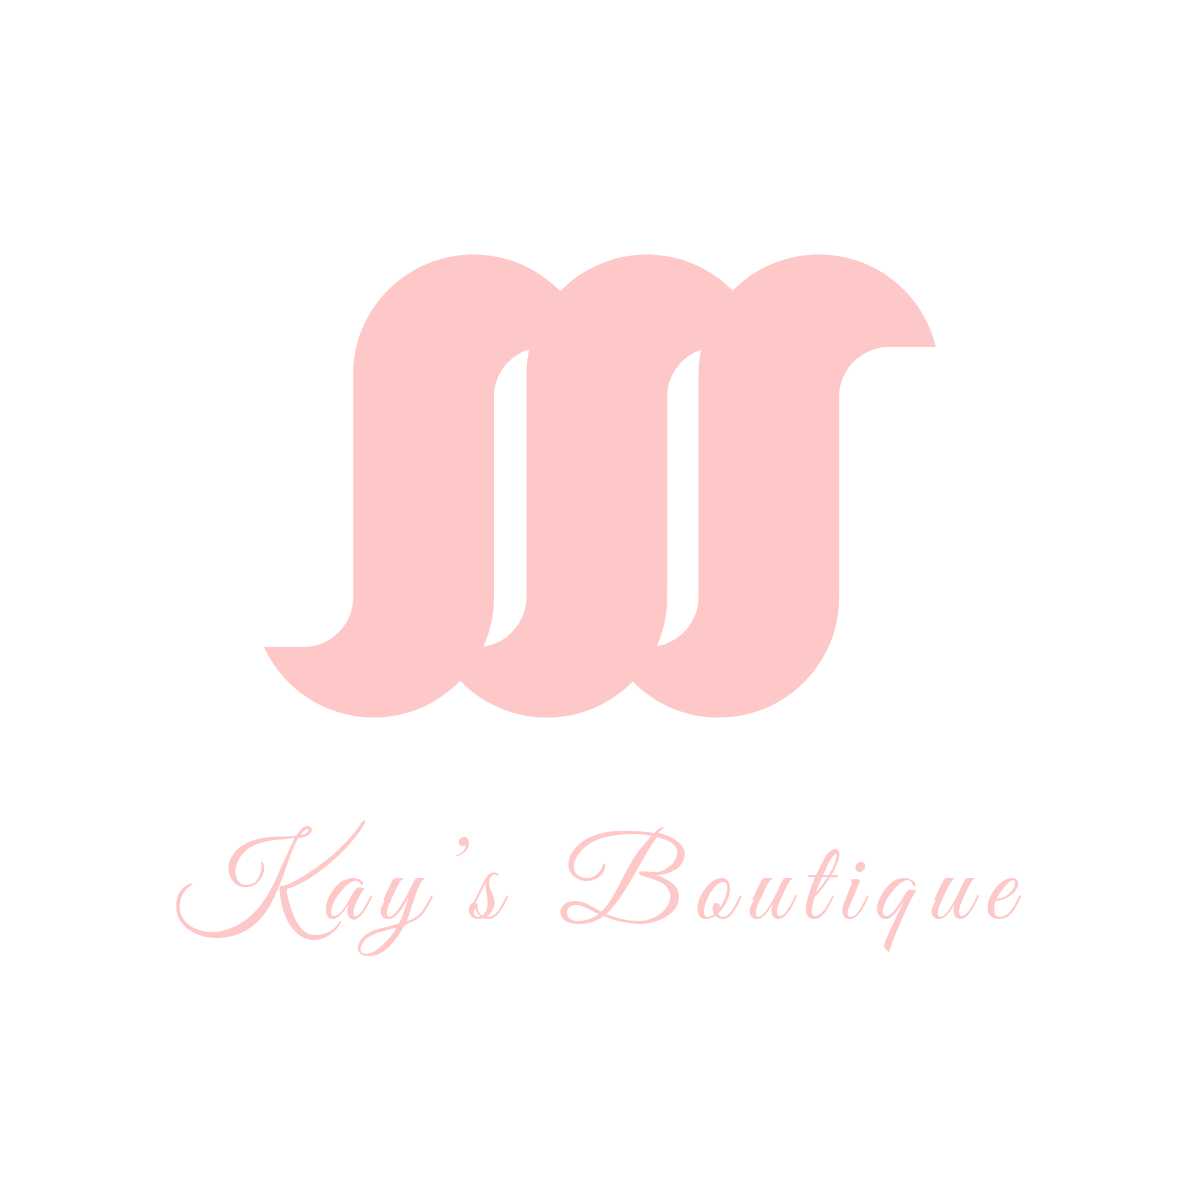 Kay's Boutique